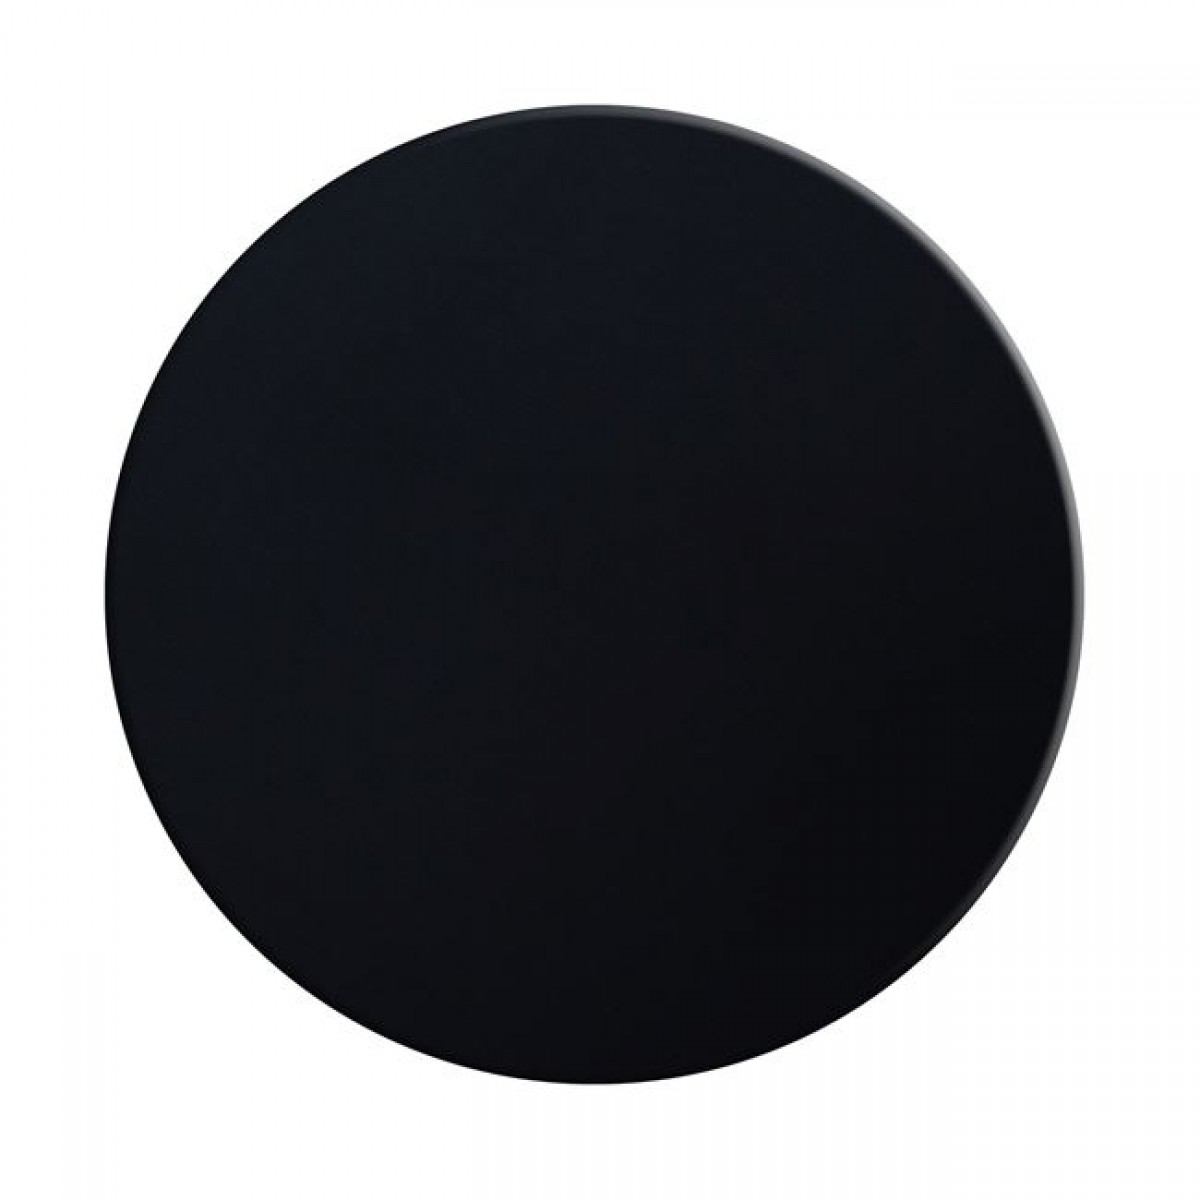 Επιφανεια Τραπεζιου 190 Werzalit Φ60  Σε Μαυρο Χρωμα Hm5227.01